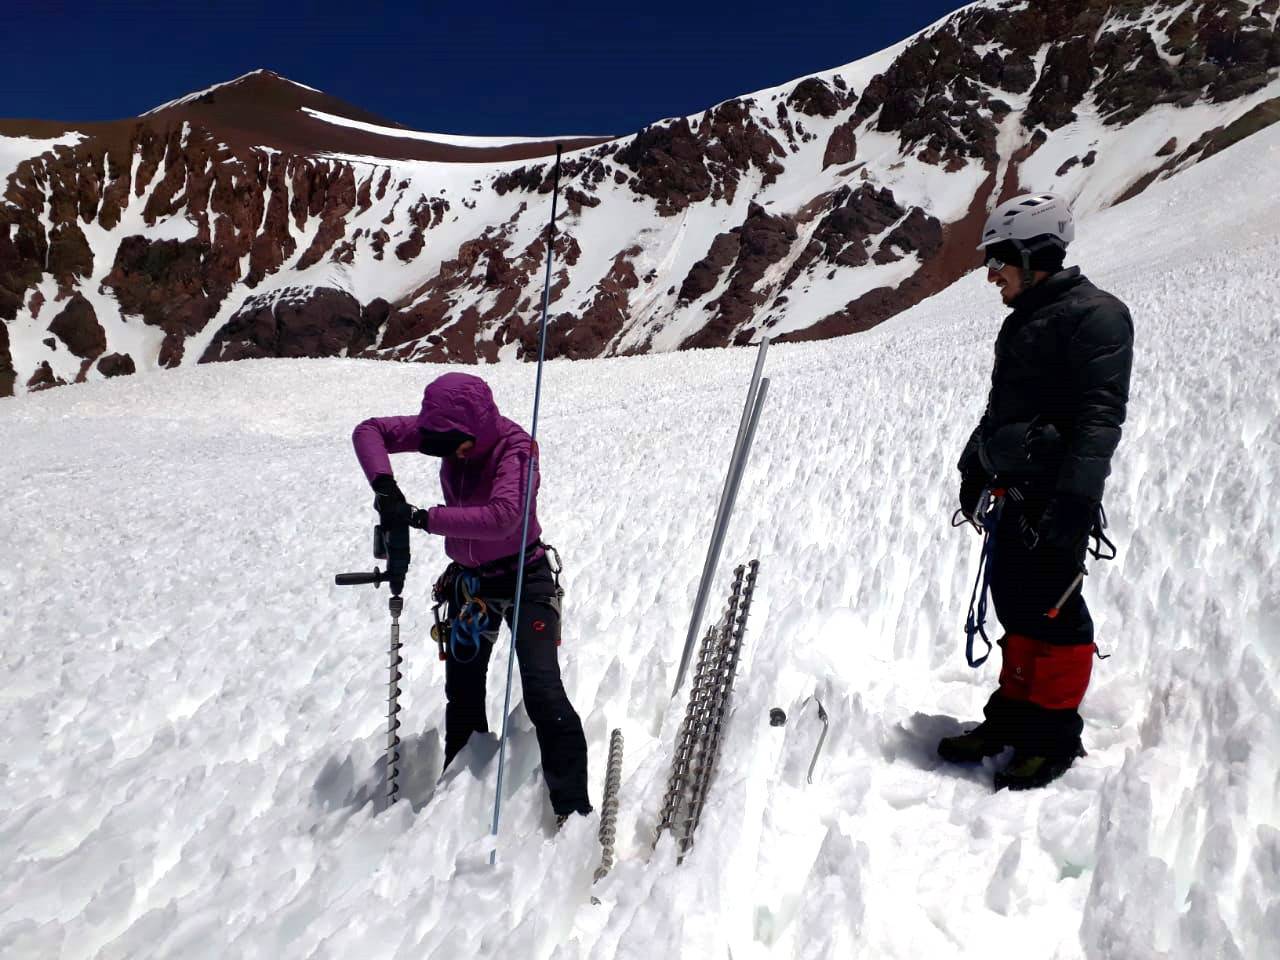 Photographie de Marion Réveillet et son collègue sur un glacier. Marion est courbée en train de planter une tige en fer dans la glace. Son collègue la regarde.